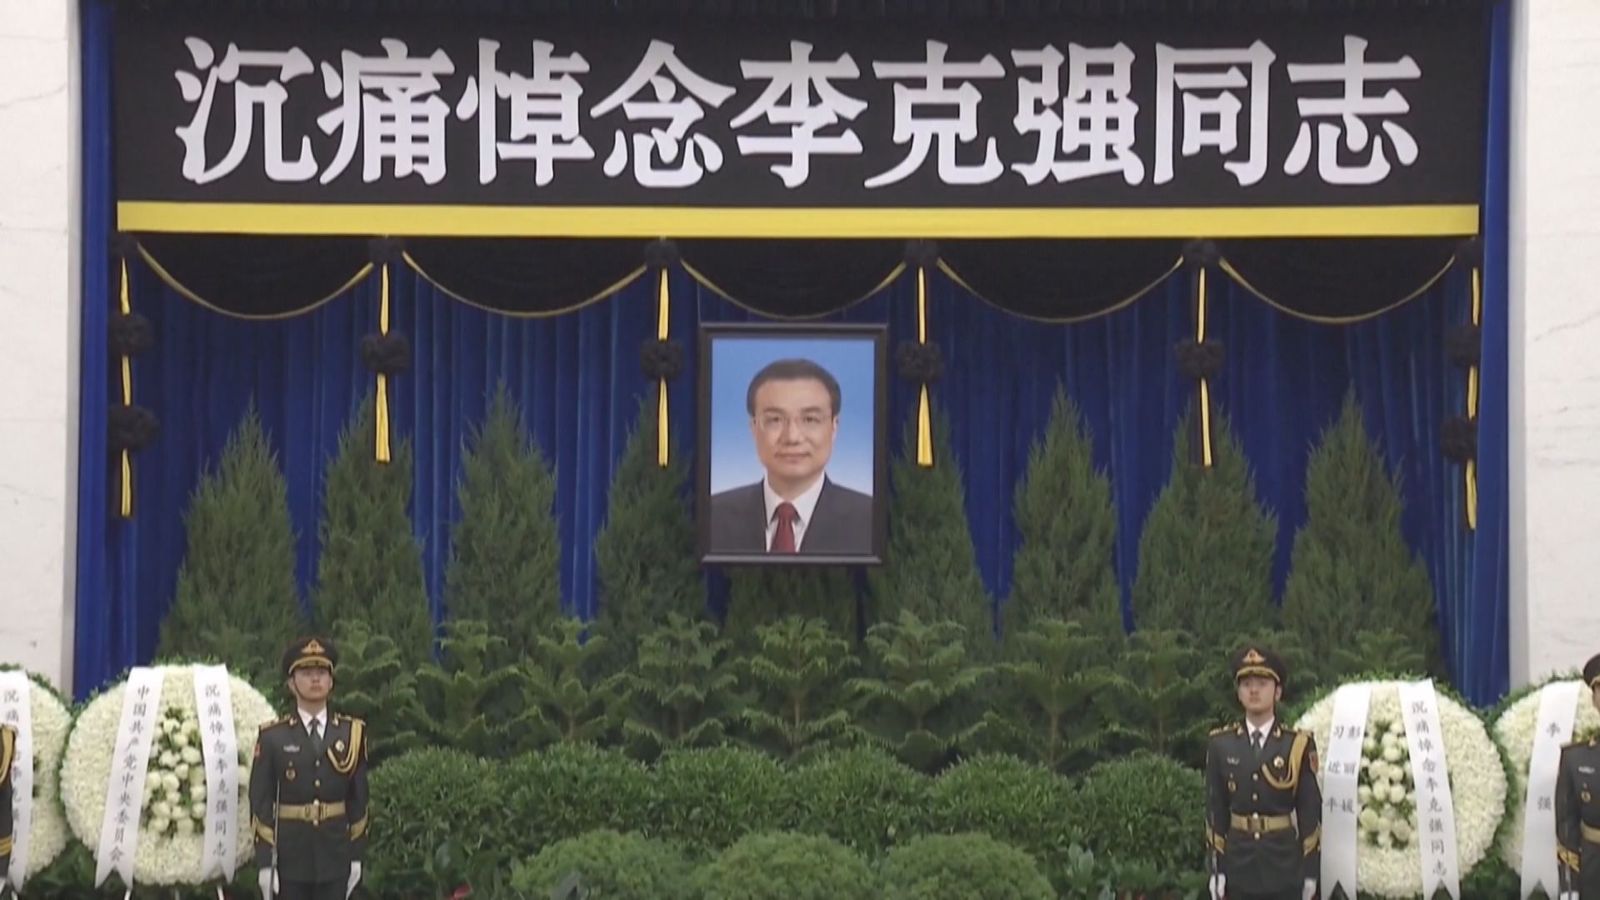 原總理李克強遺體已在北京火化 習近平等領導人送別